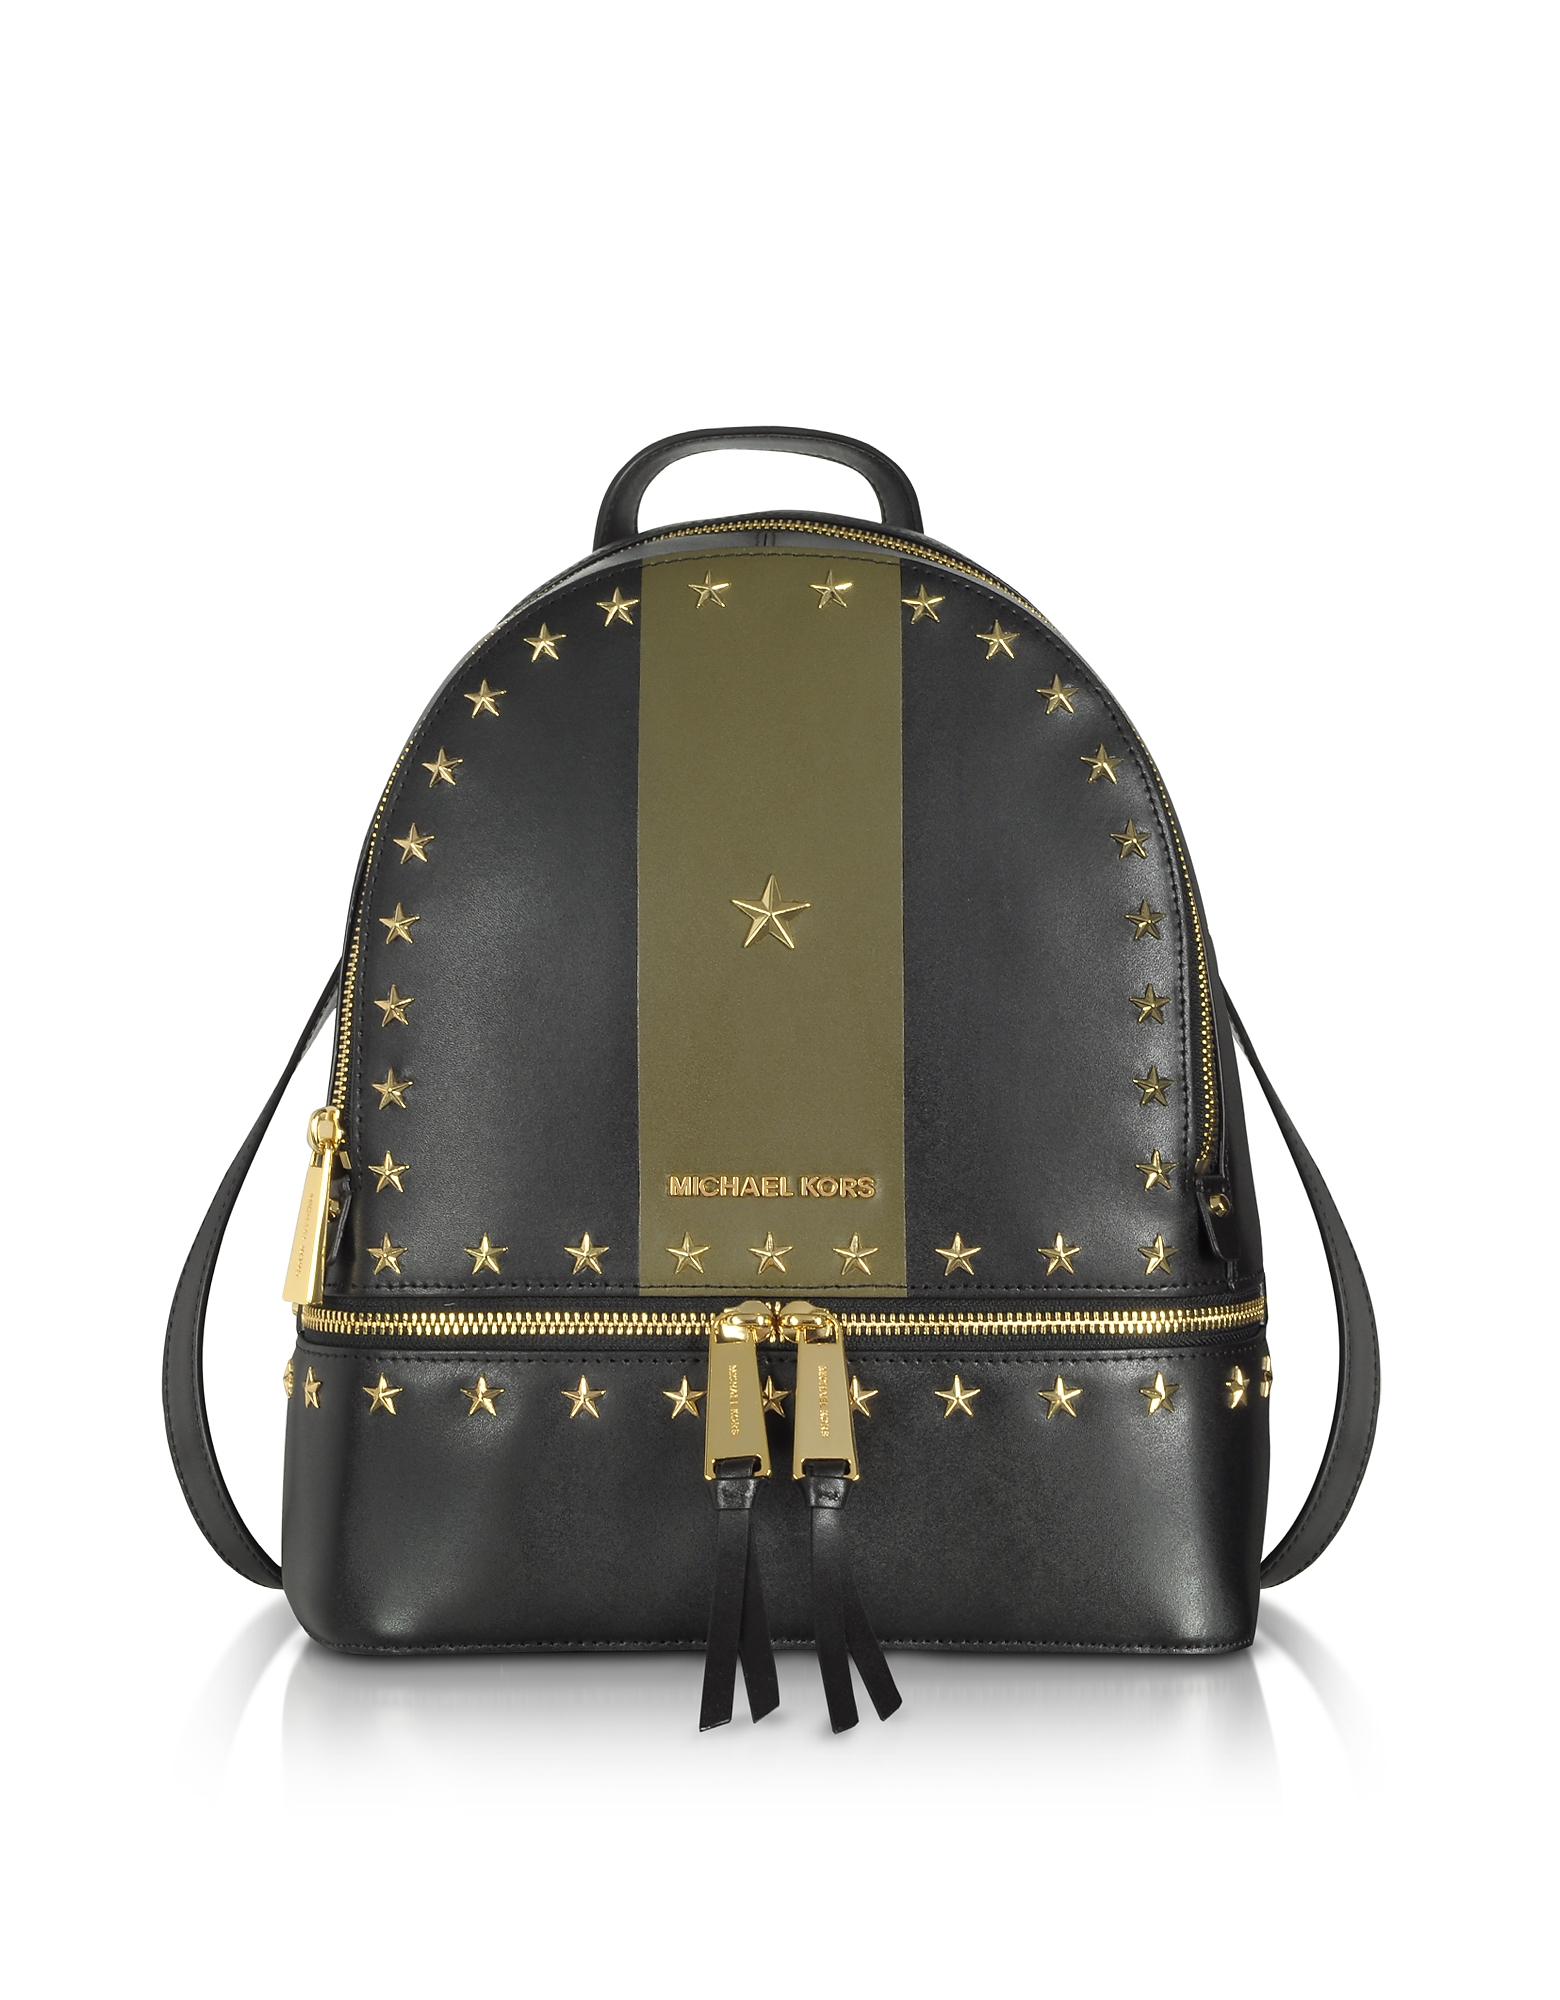 

Rhea Zip Medium Black and Olive Leather Backpack w/Stars